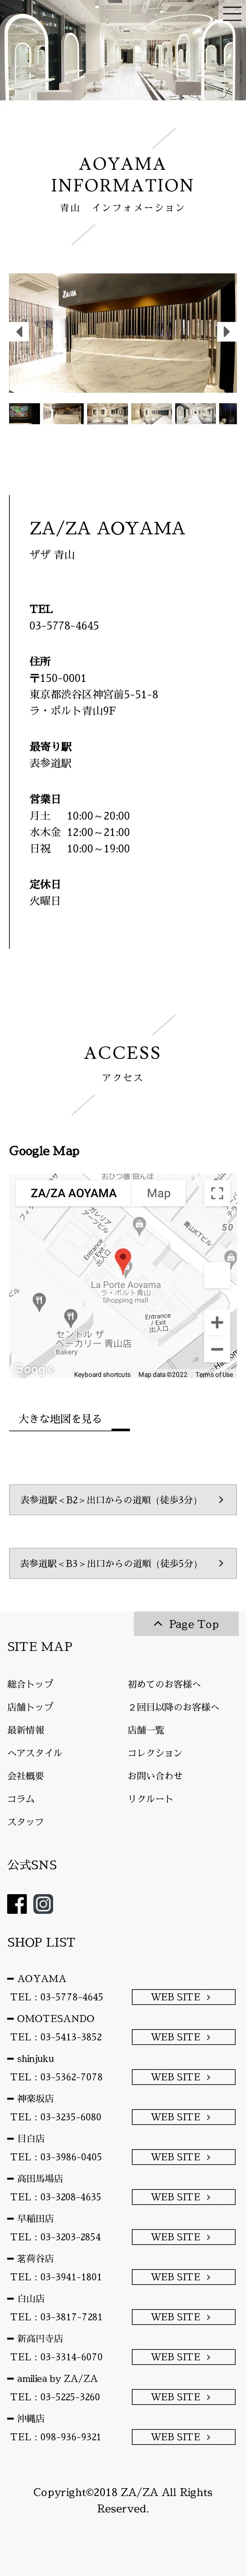 キャプチャ画面 会社名:株式会社レゾナプロジェクト名:ZA/ZA AOYAMA 画面名:アクセス・地図・マップ詳細 デバイス名:SPカテゴリ:美容・化粧・エステタグ:SP,アクセス・地図・マップ詳細